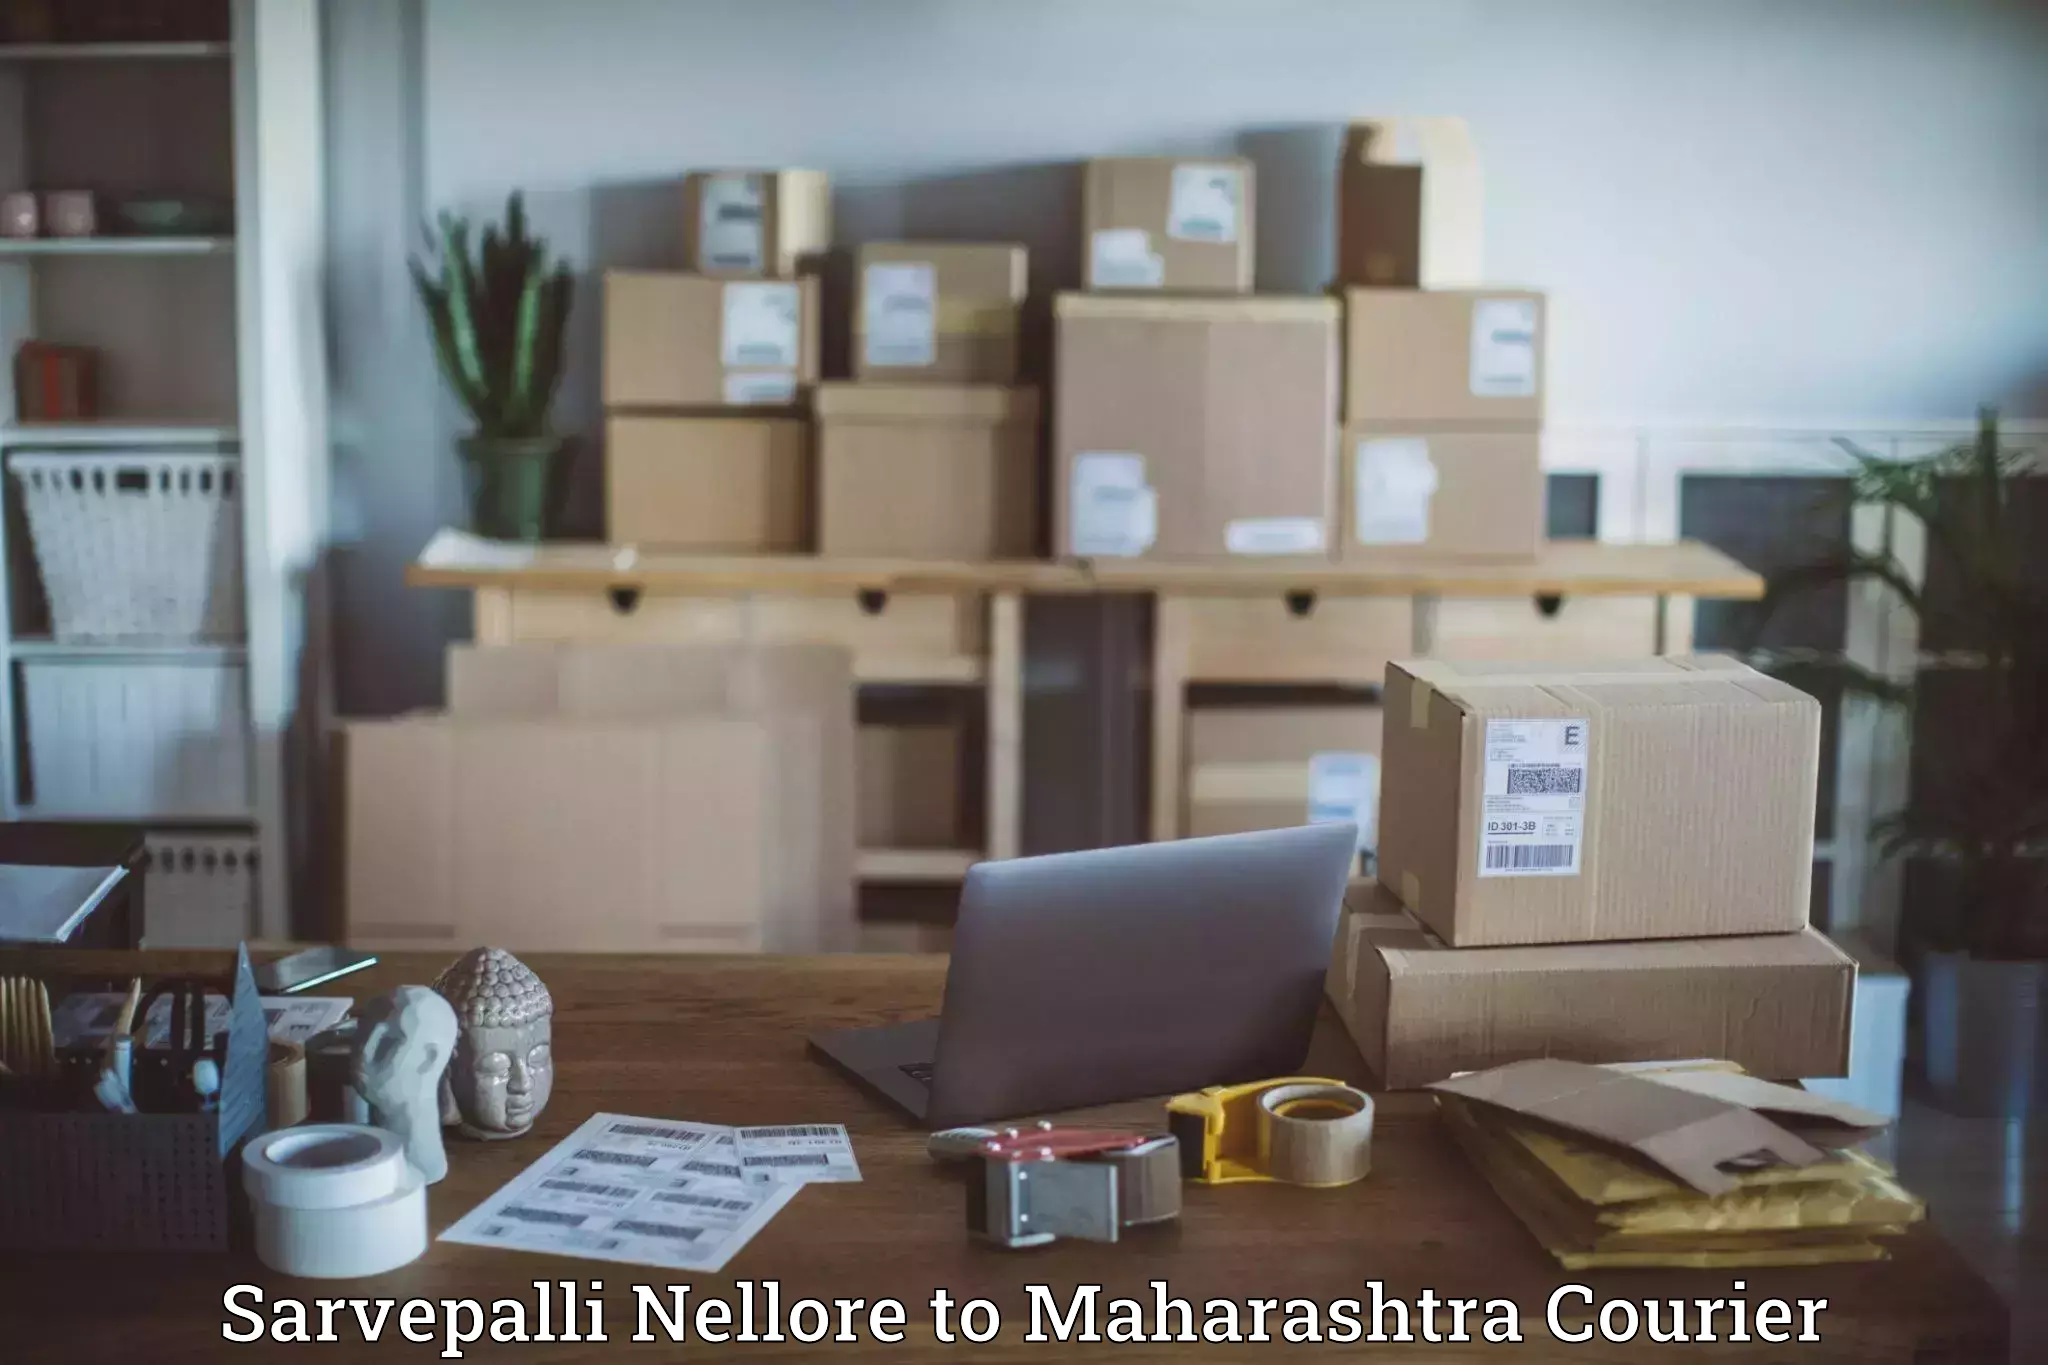 Cargo delivery service Sarvepalli Nellore to Lasalgaon